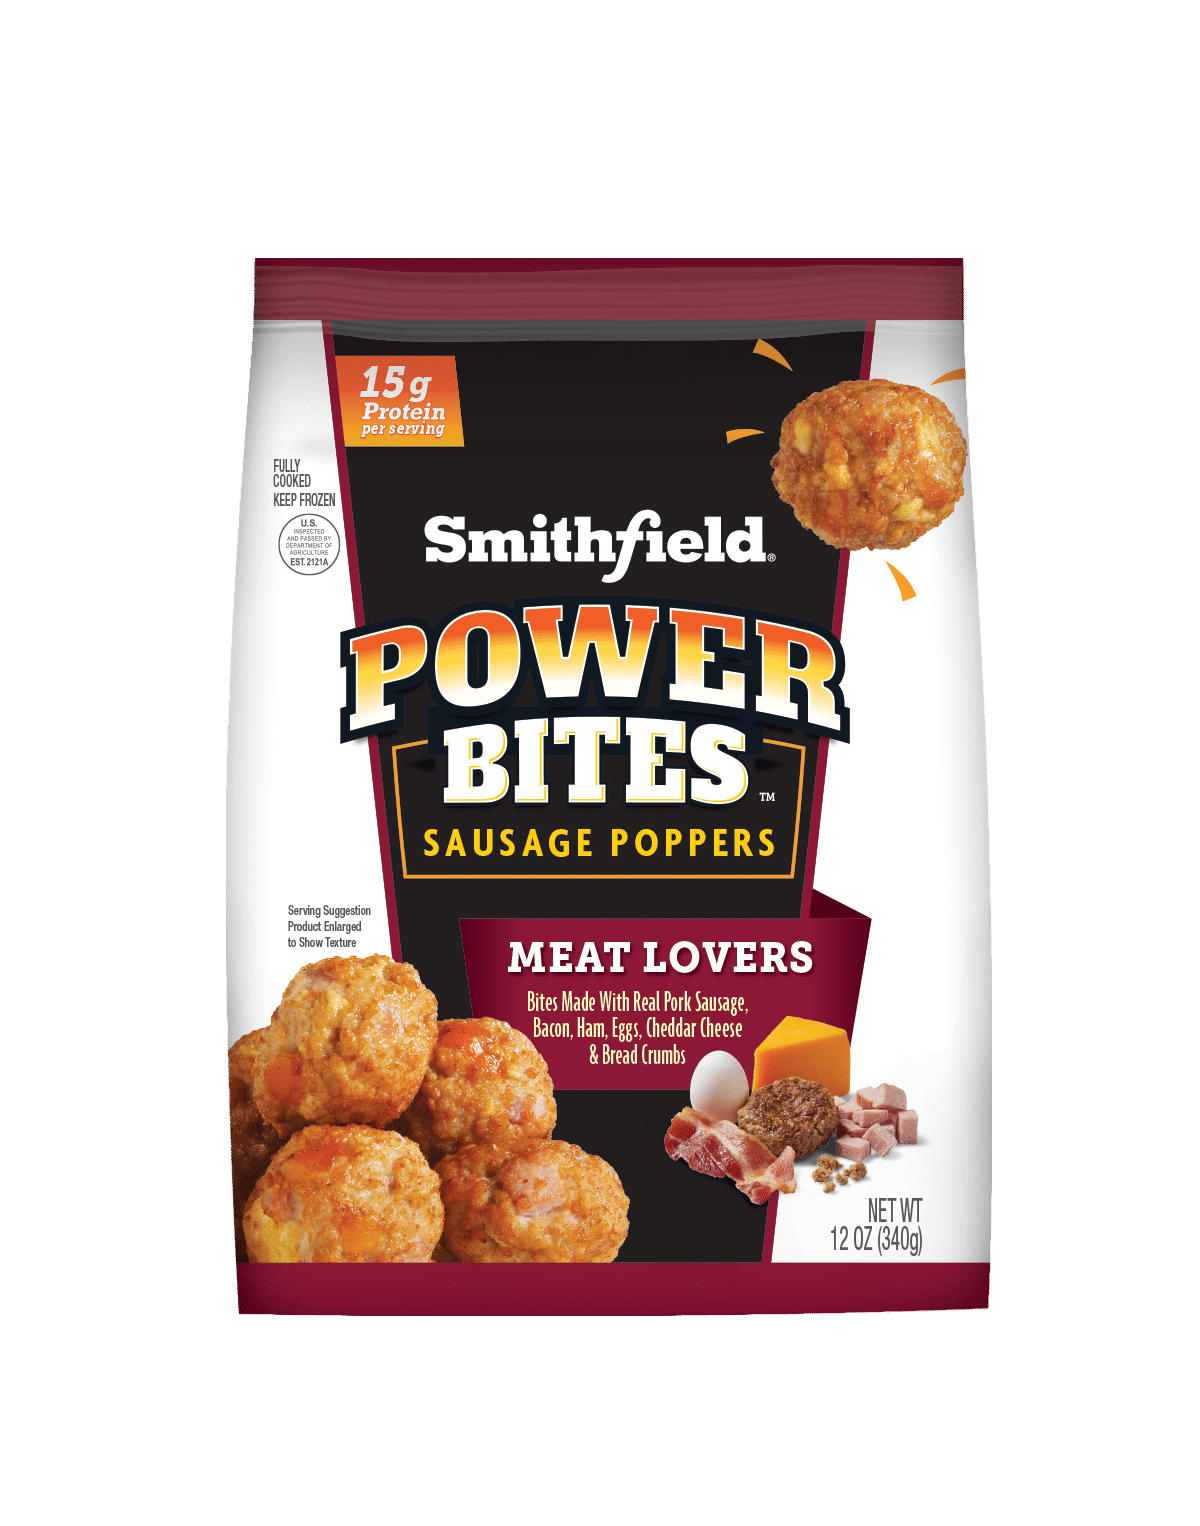 Smithfield Foods develops Skinnygirl-brand lunchmeat